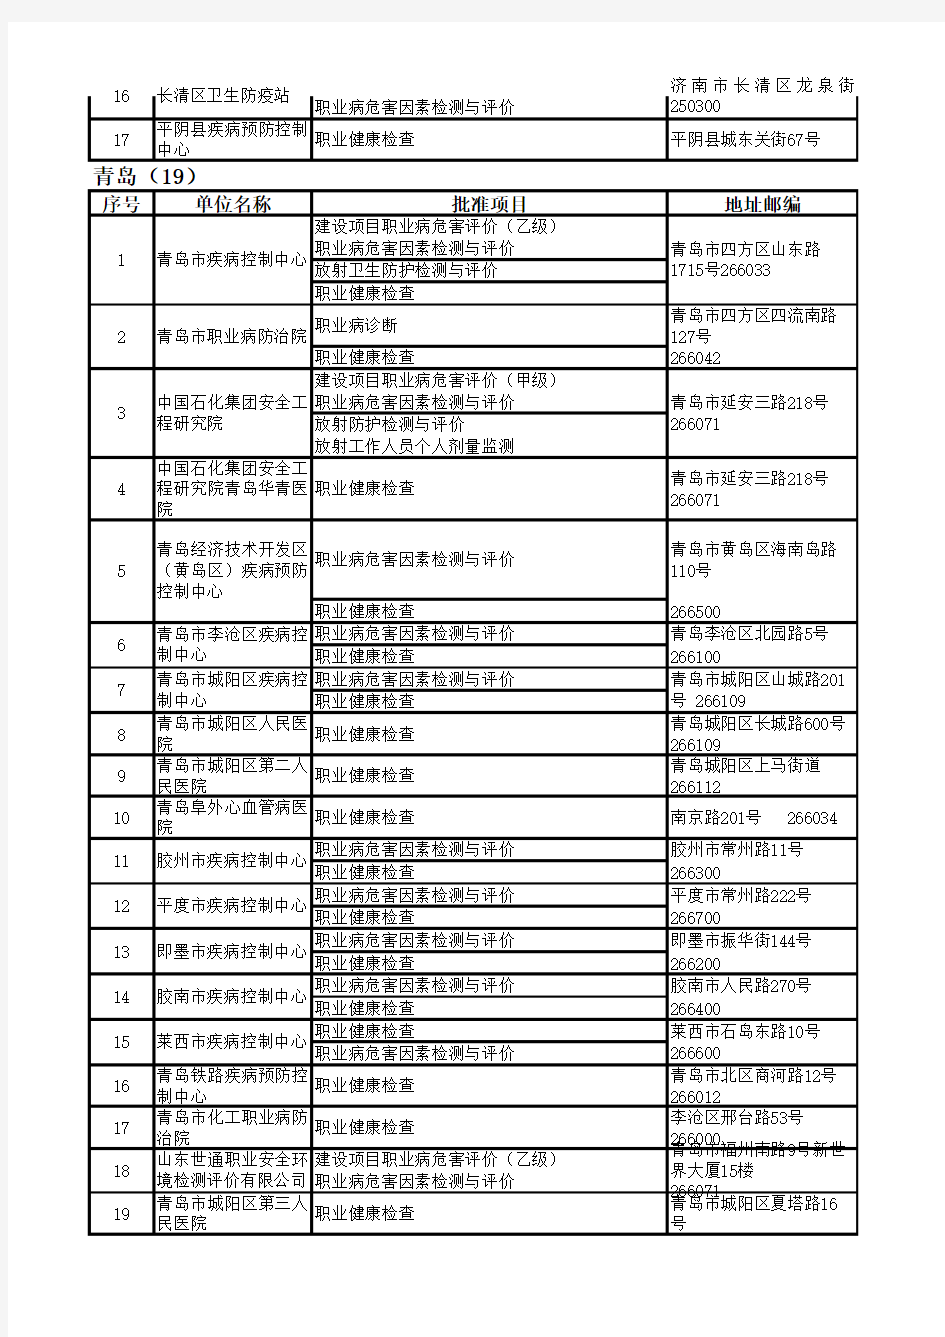 山东省职业健康体检机构名单